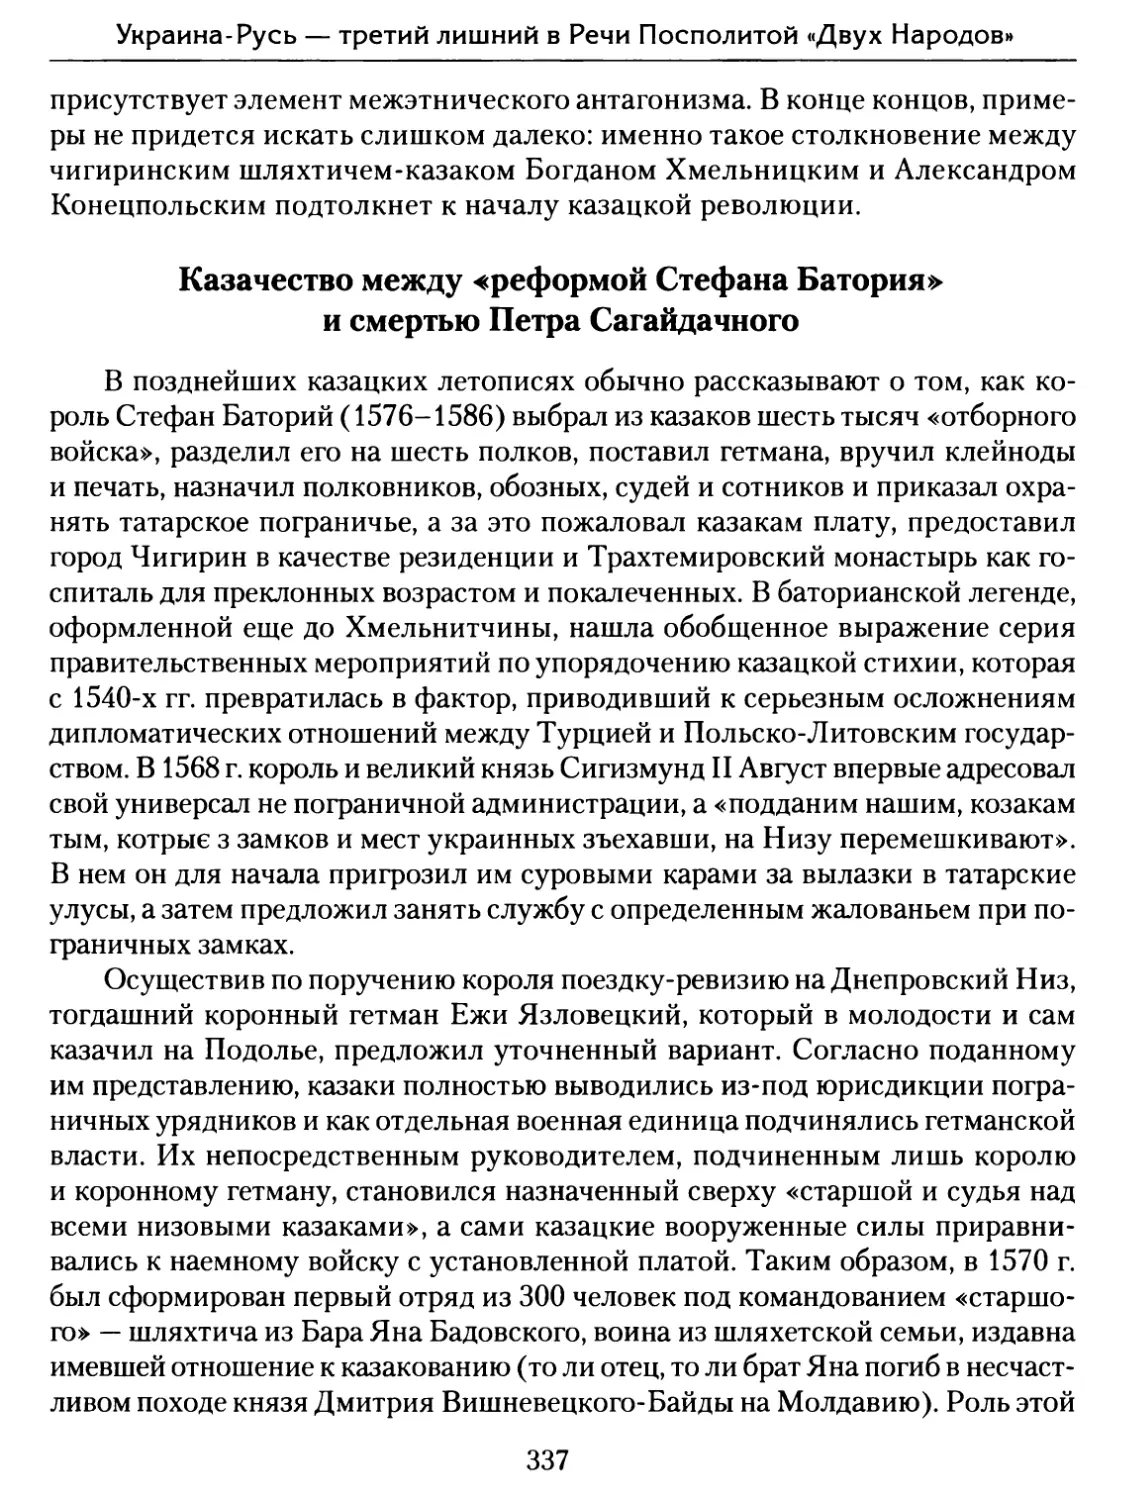 Казачество между «реформой Стефана Батория» и смертью Петра Сагайдачного